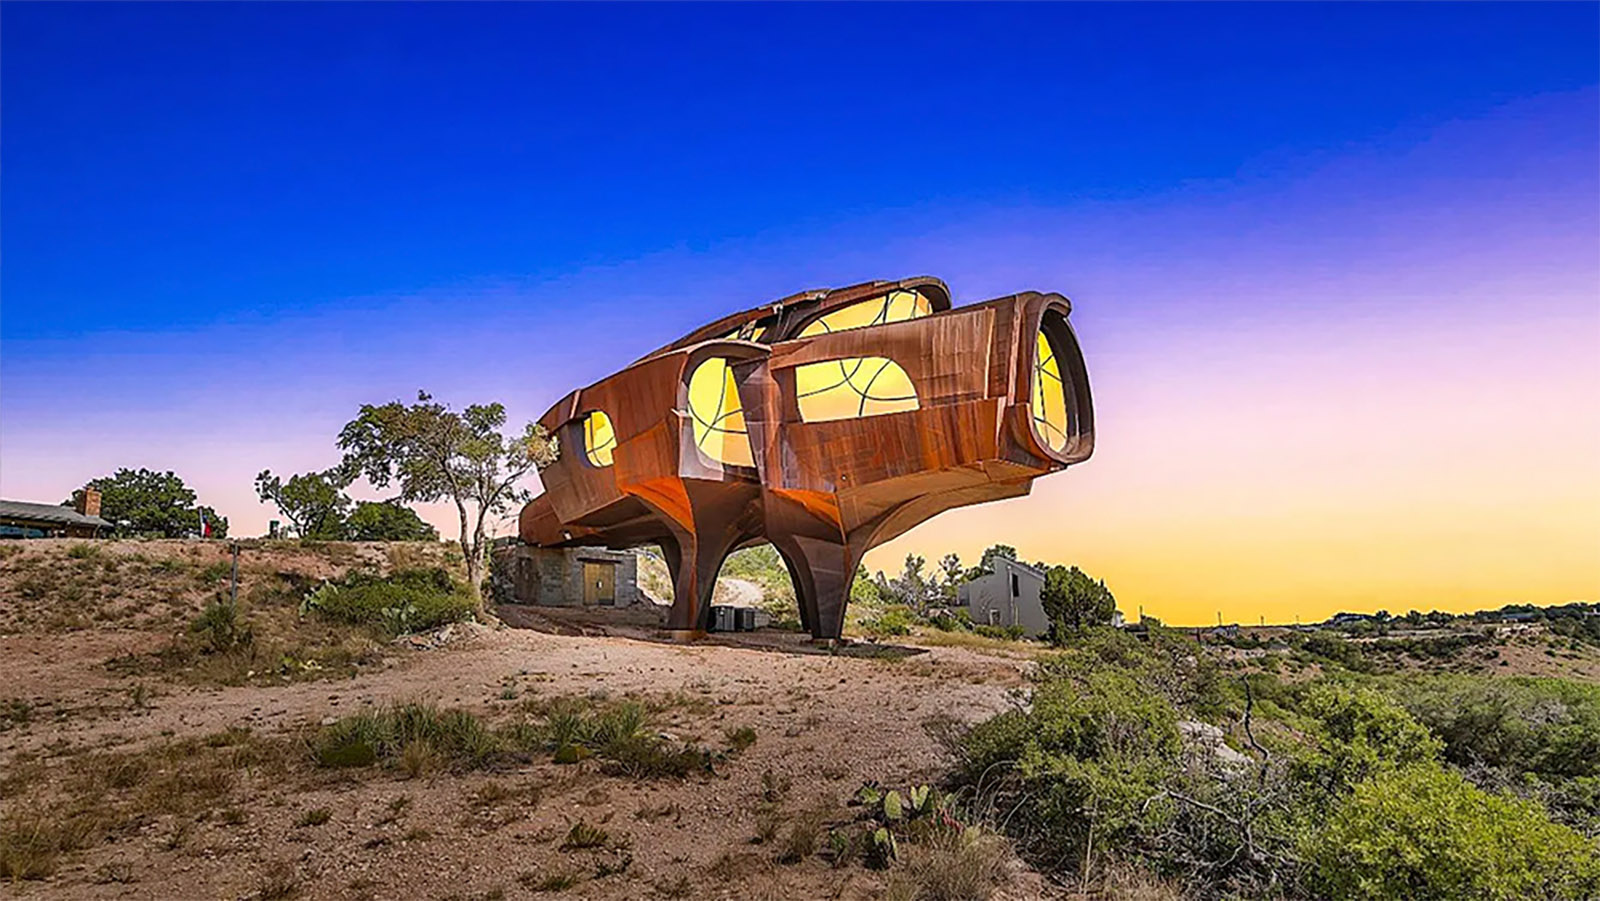 <p>Необычный дом в виде левитирующего космического корабля был придуман американским скульптором Робертом Бруно</p>